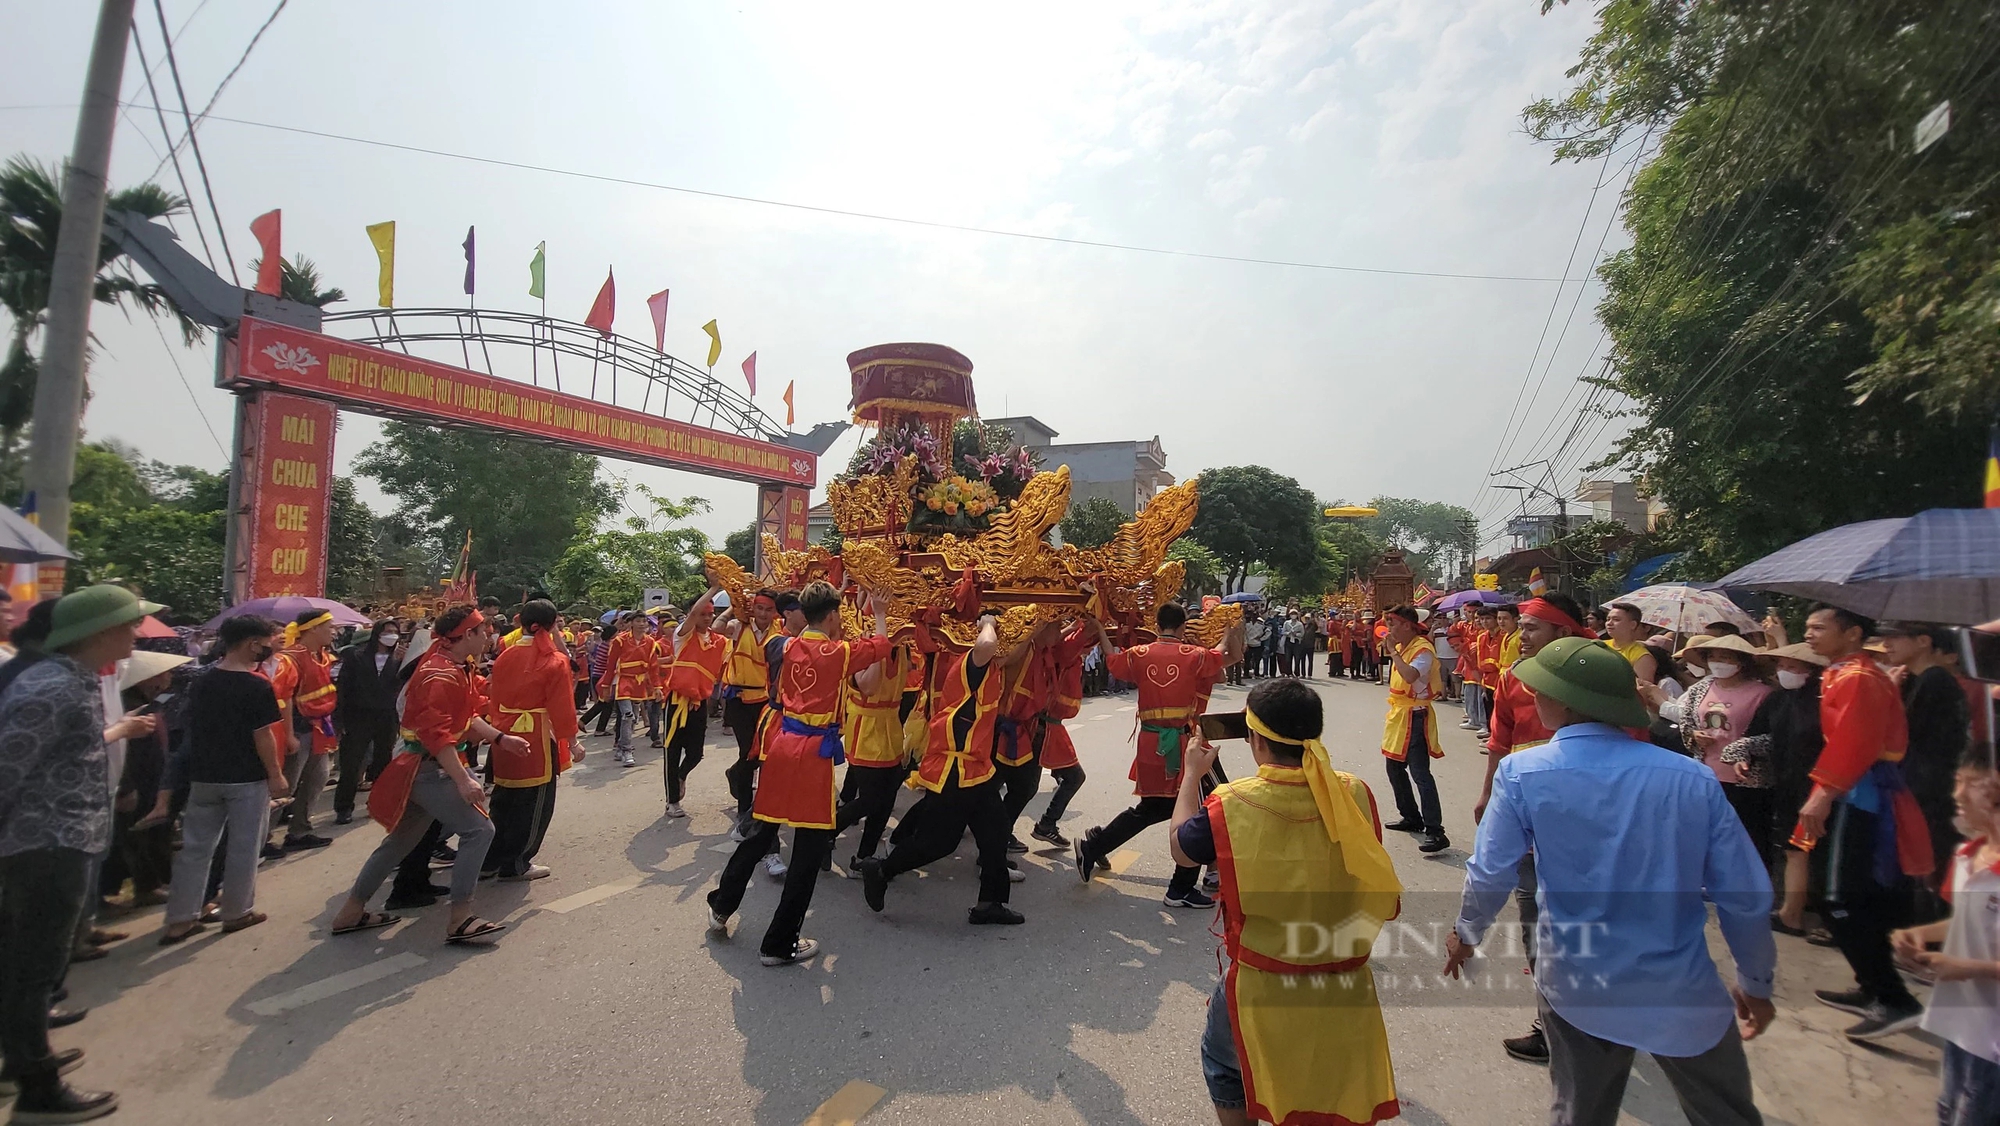 Lễ hội chùa Trông với màn xoay kiệu khiến hàng nghìn người xem "lác mắt"- Ảnh 4.